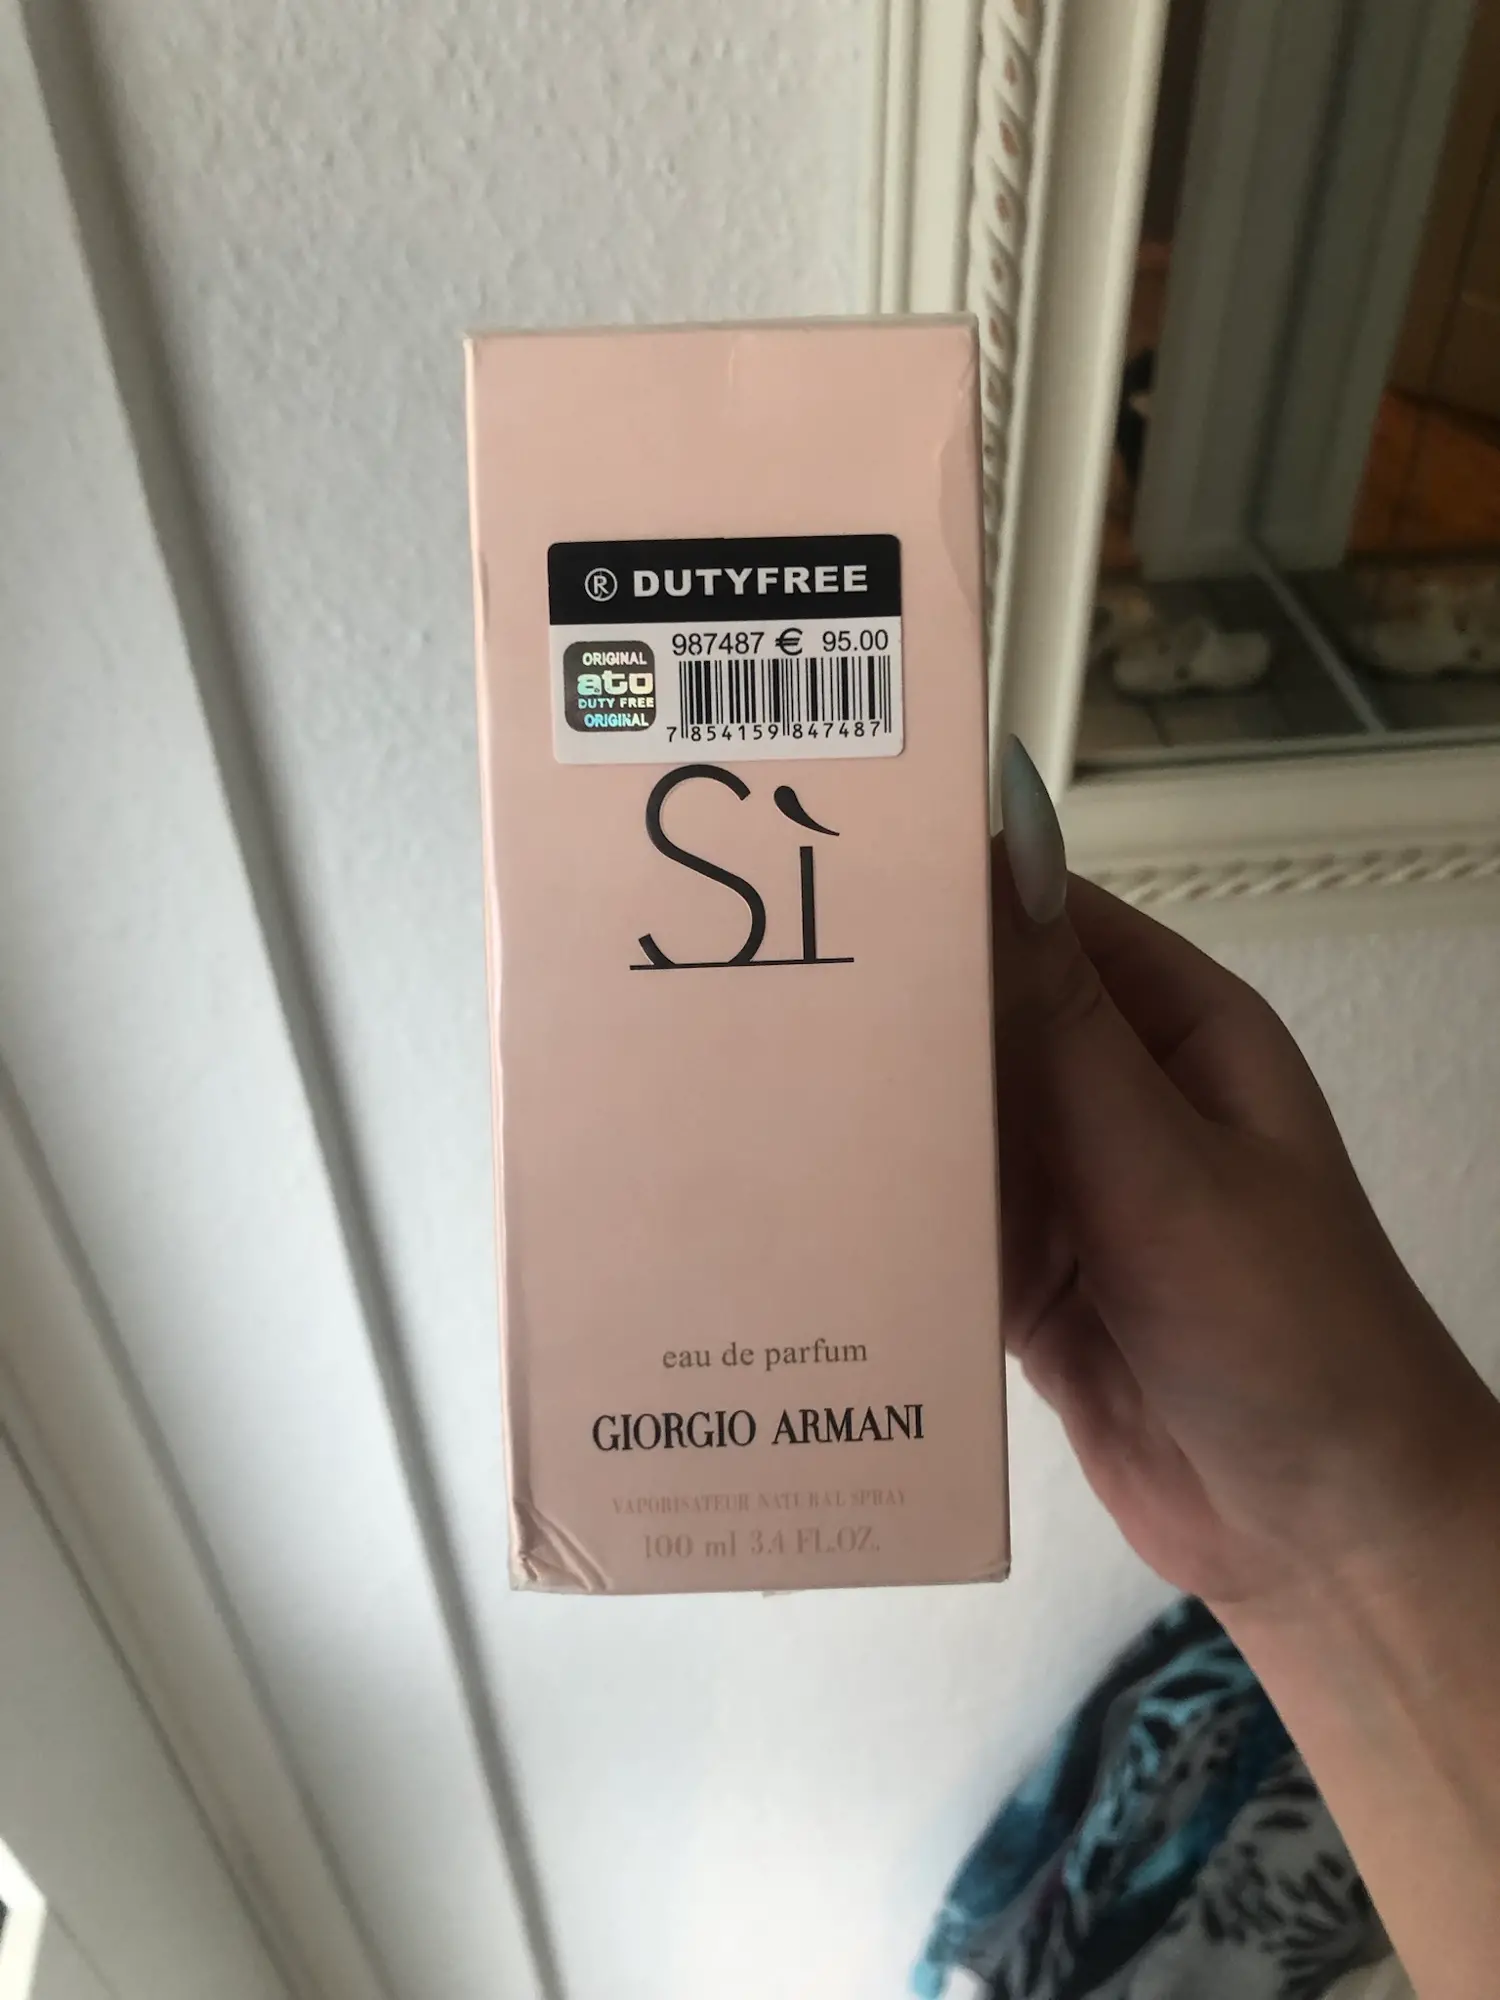 Giorgio Armani eau de parfum